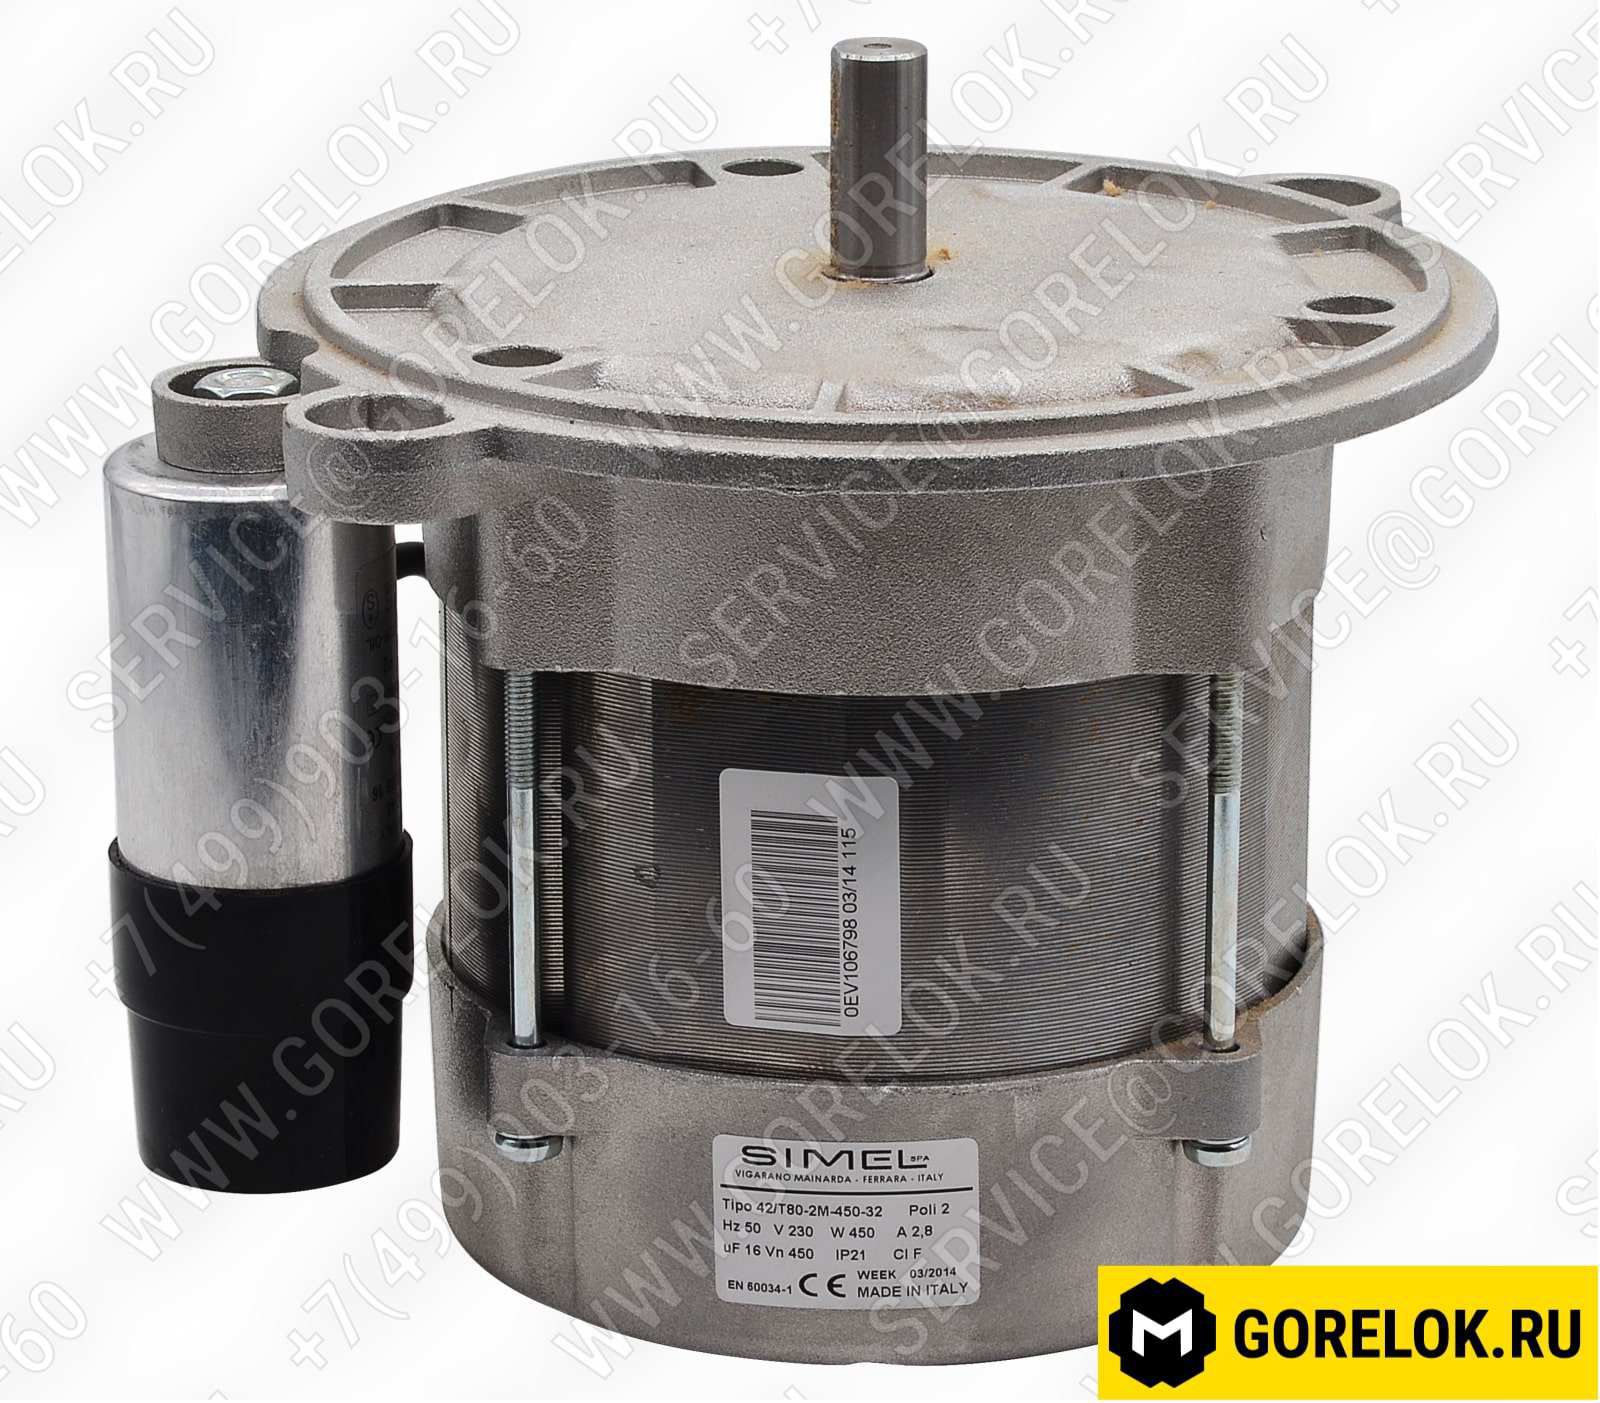 130131287 Газовое оборудование: Двухступенчатый газовый клапан DUNGS MB-ZRDLE 407 B01 S50